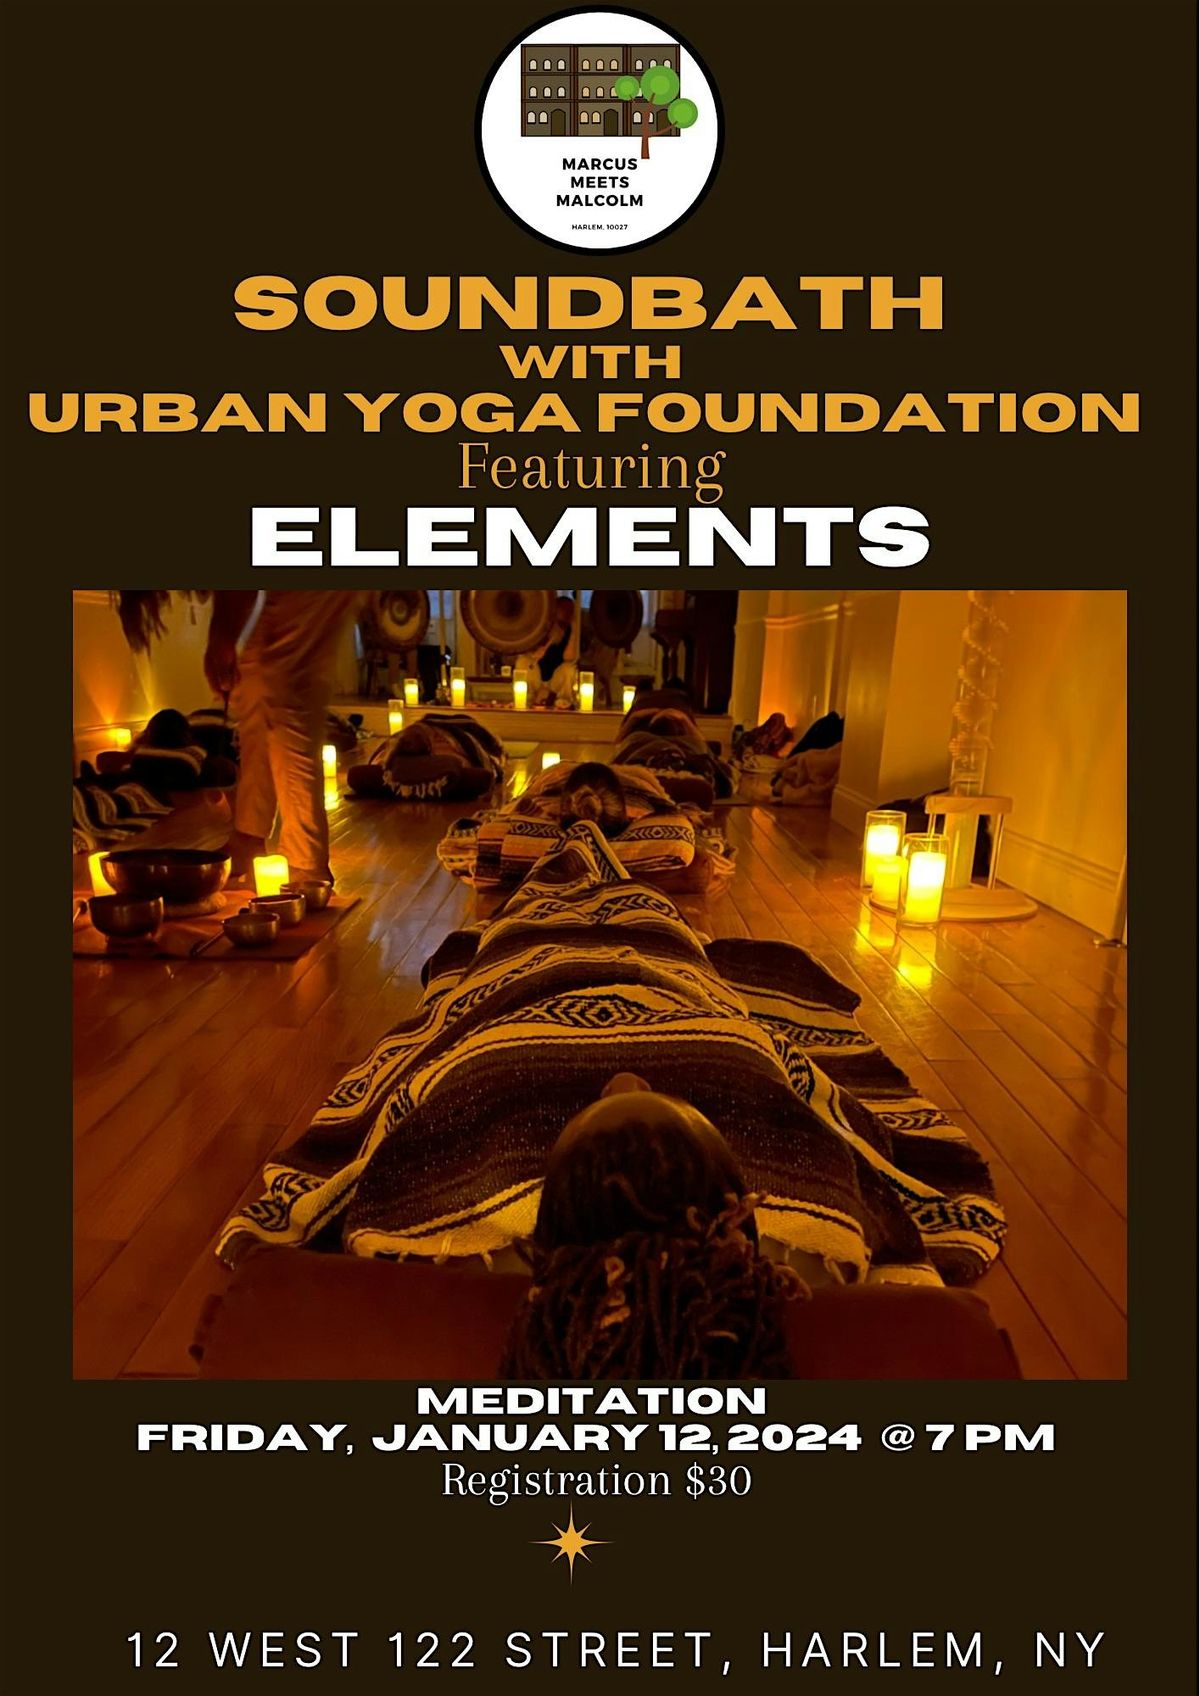 Soundbath with Urban Yoga Foundation featuring Elements - 2024